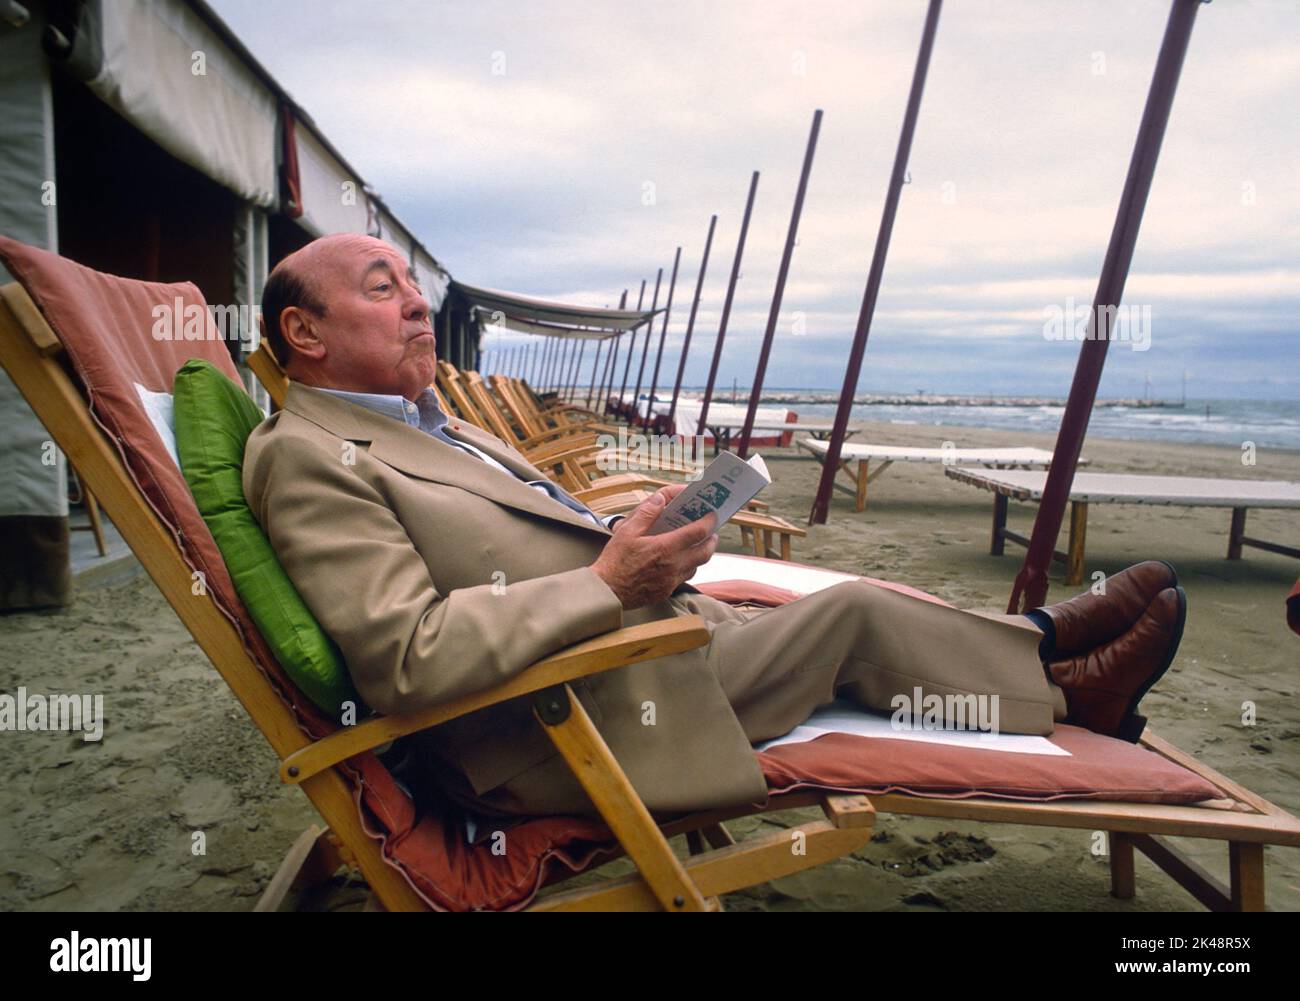 - der französische Filmemacher Marcel Carné beim Filmfestival in Venedig 19822 - il regista francese Marcel Carné al Festival del Cinema di Venezia nel 1982 Stockfoto